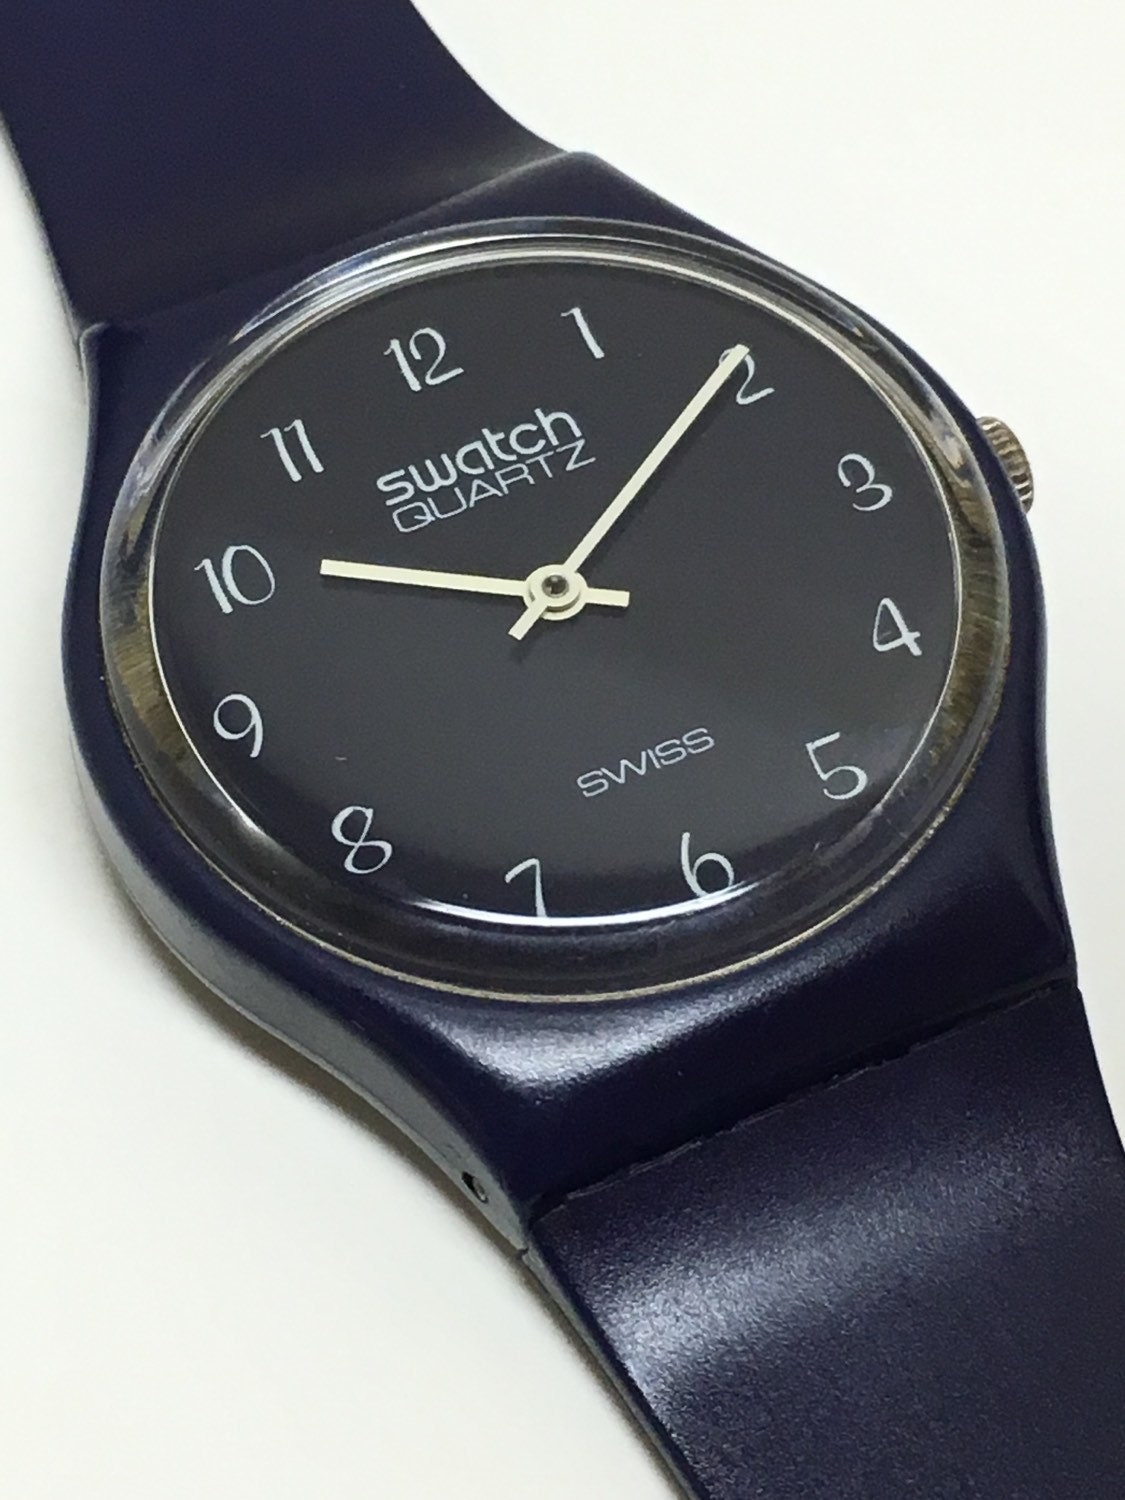 Vintage Swatch Watch GN001 1983 Rare First Year Test Market